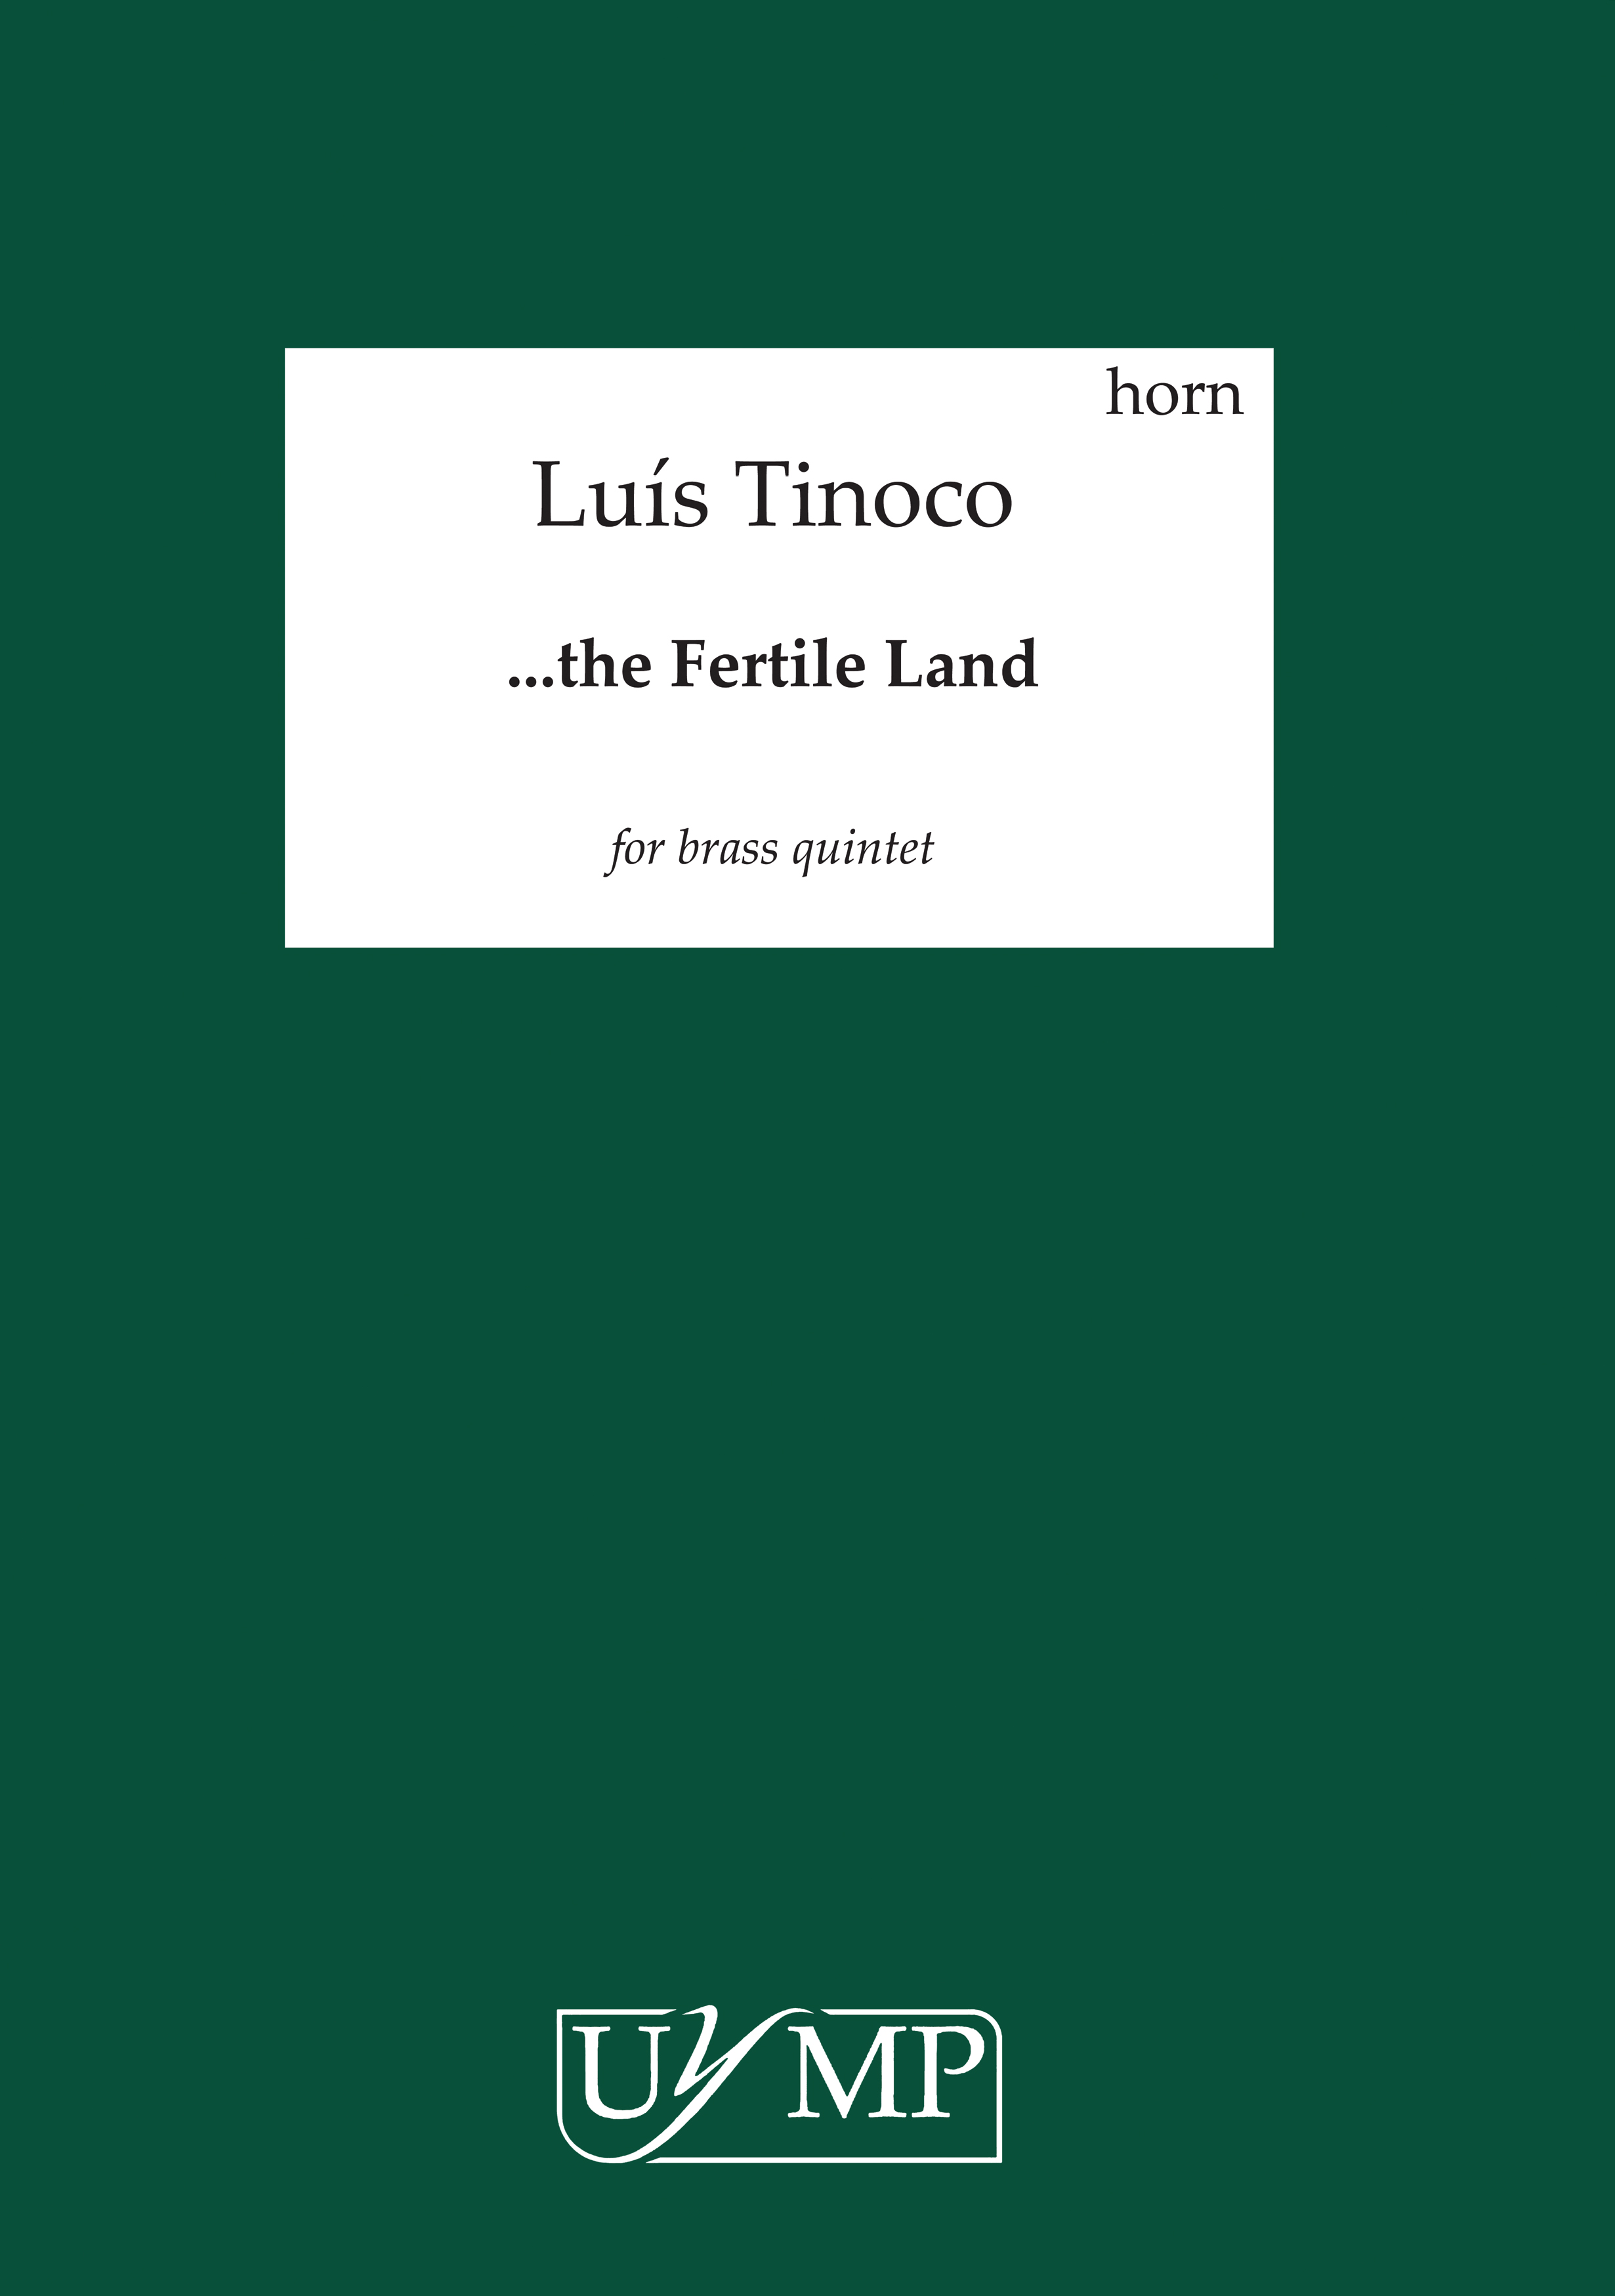 Lus Tinoco: the Fertile Land